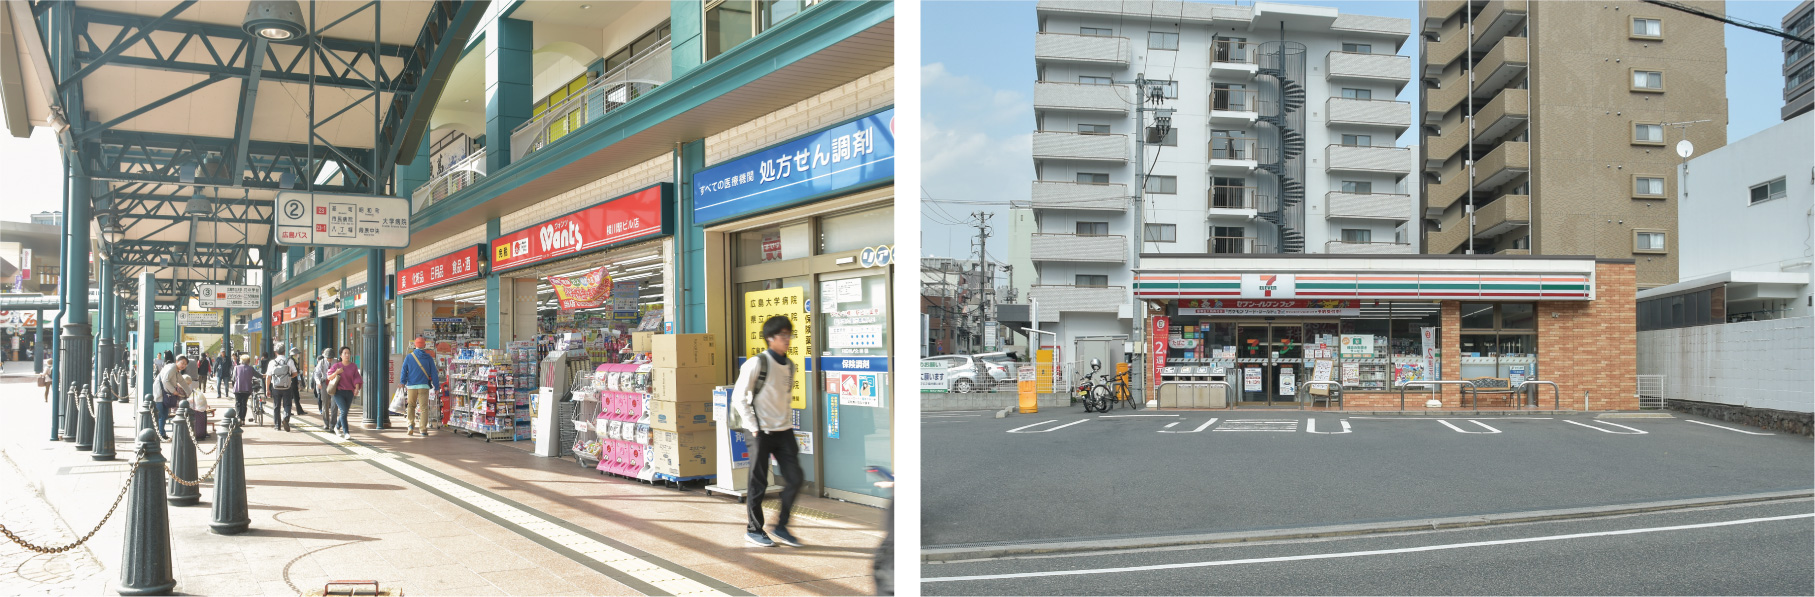 広島市、住みたい街、人気エリア、横川、ドラックストア、コンビニ